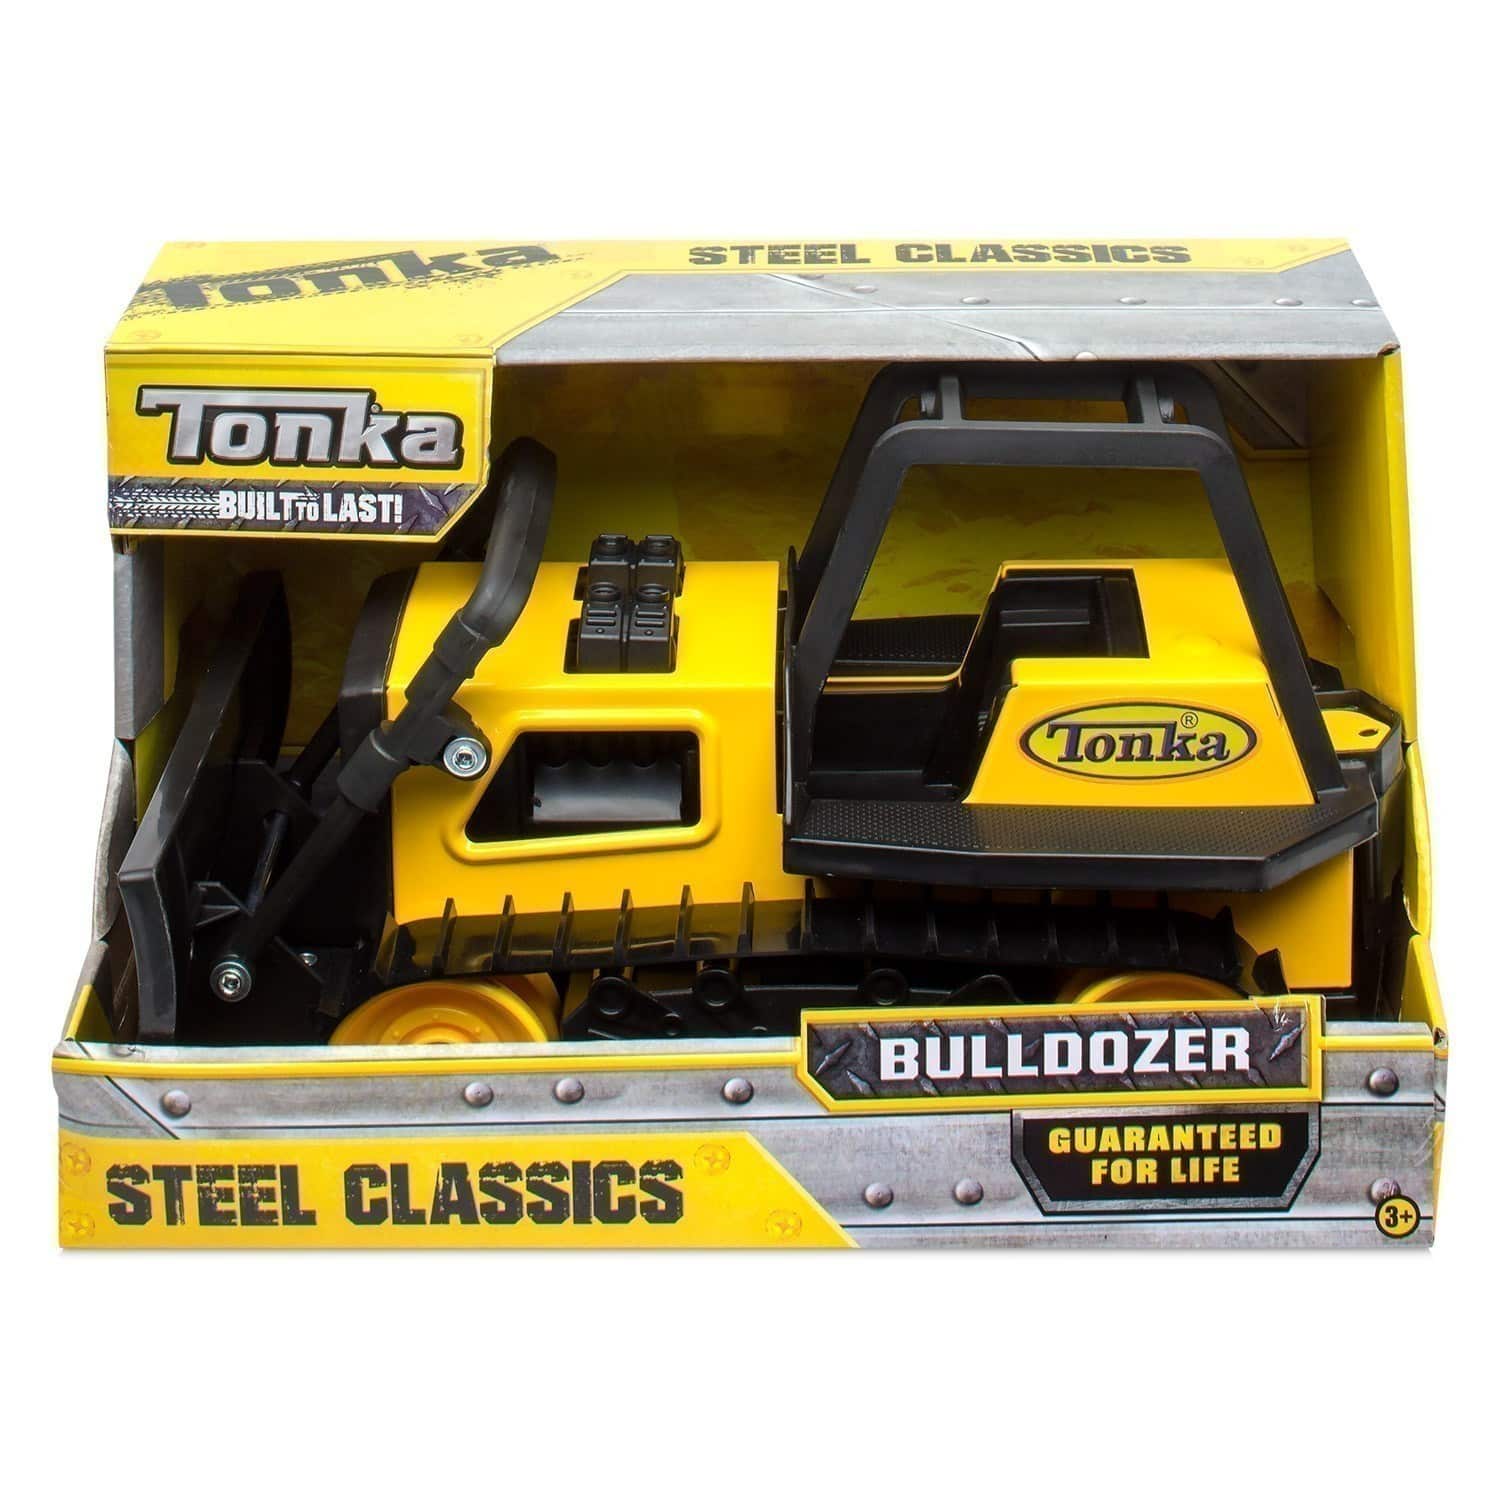 Tonka - Tough Bulldozer